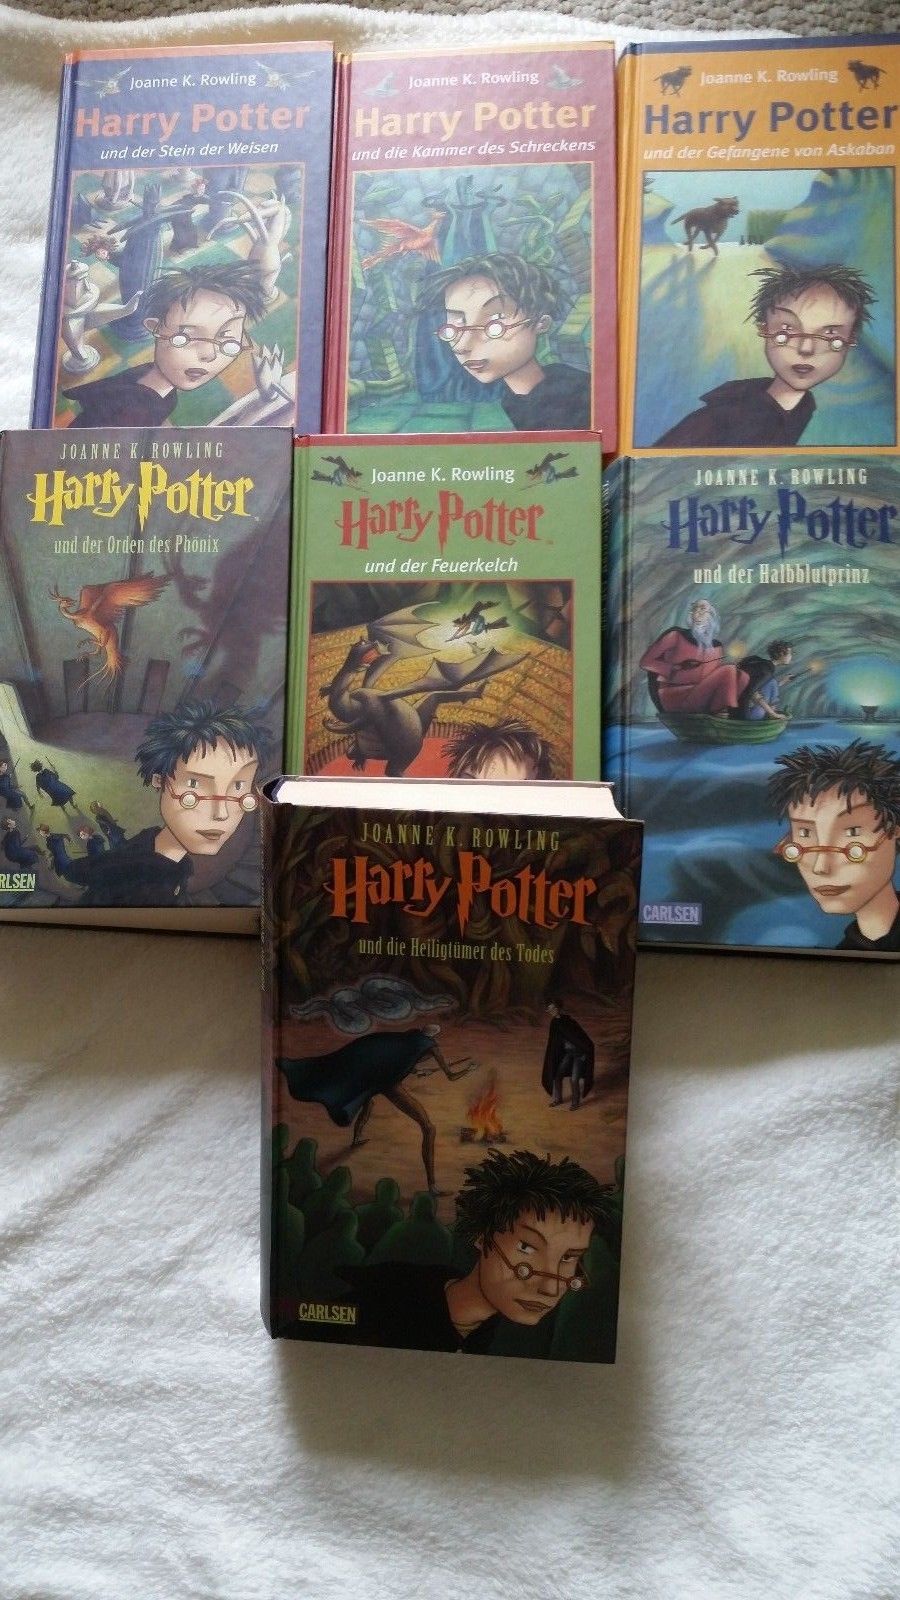 Harry Potter alle 7 Bände